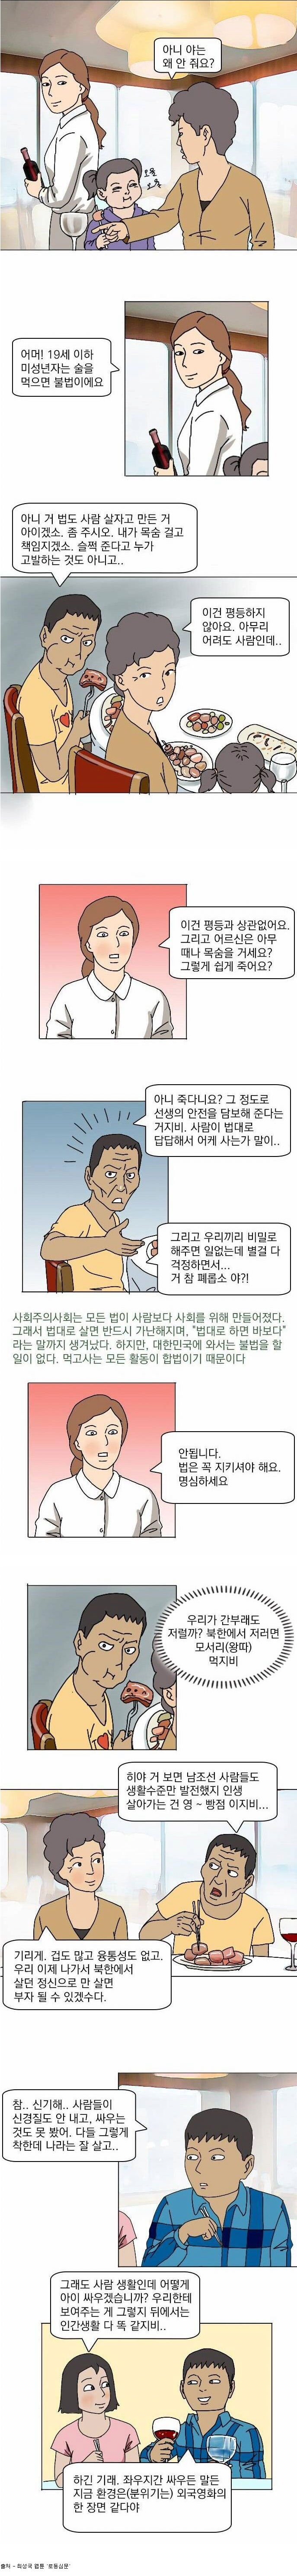 image.png 탈북 만화가가 그린 첫 뷔페 간 경험